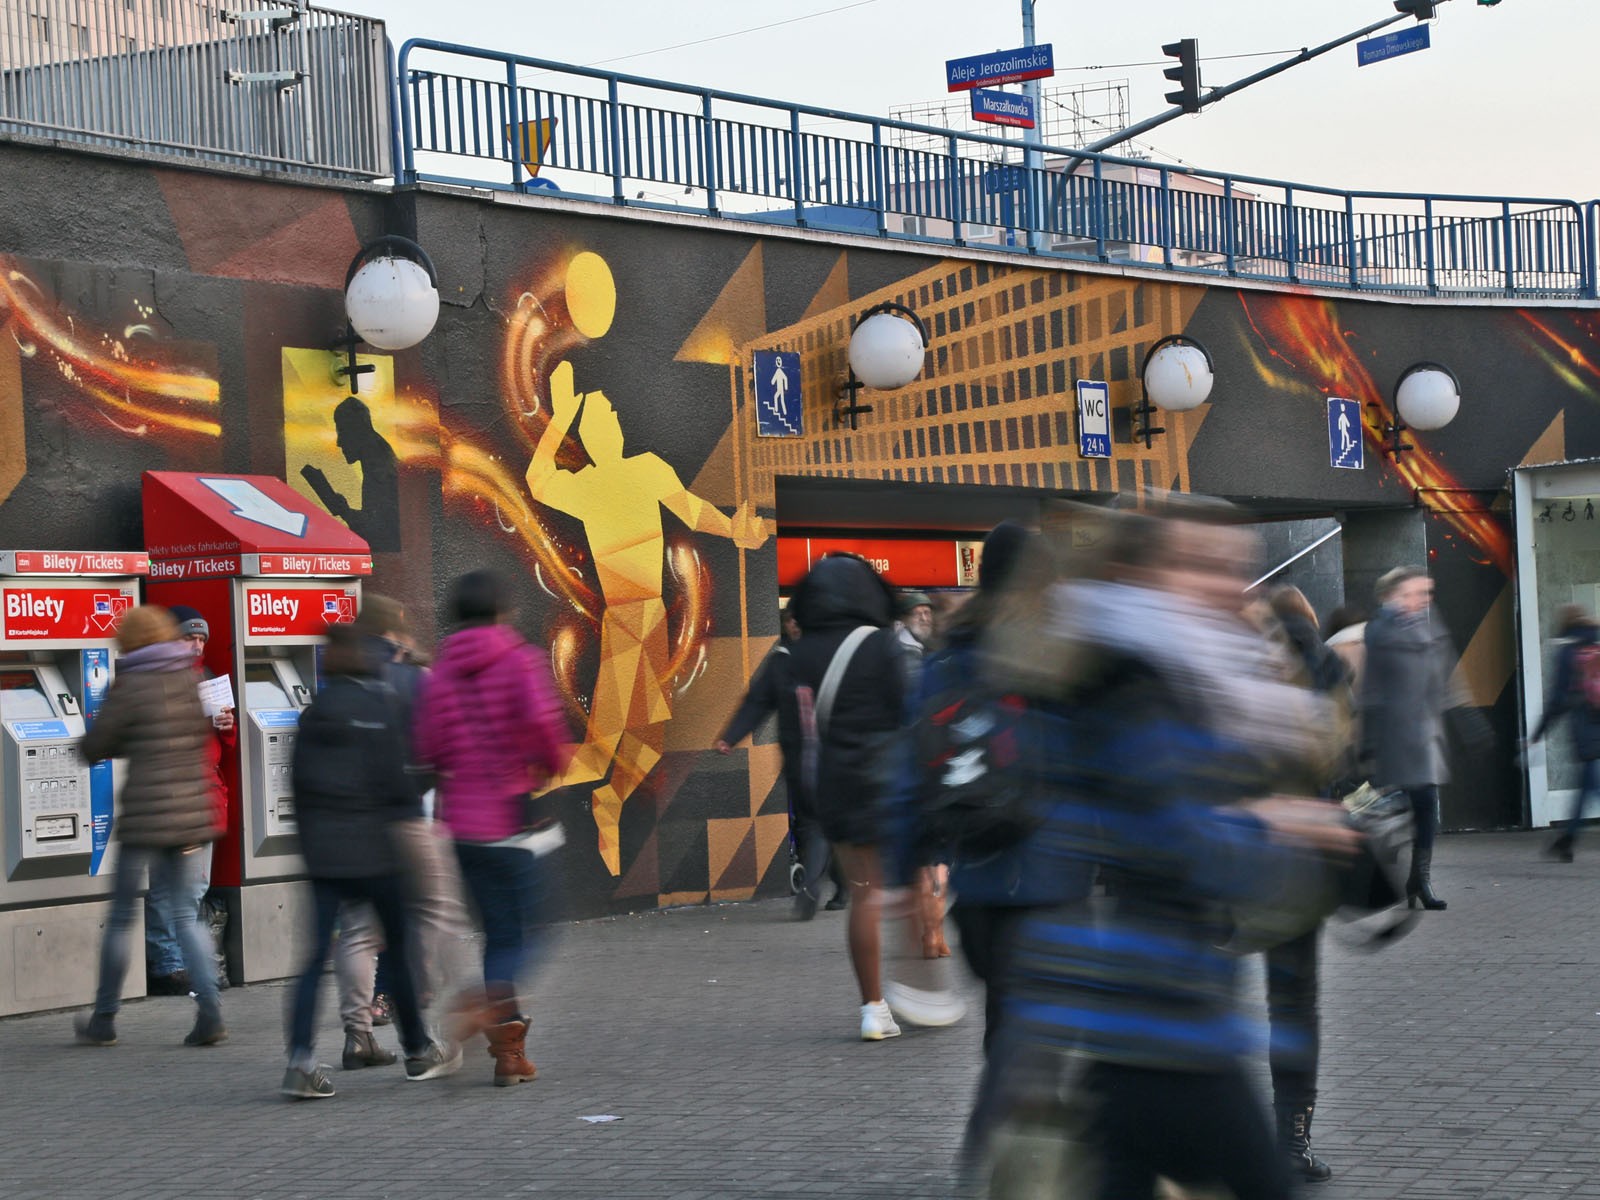 Mural artystyczny PGE Zapewniamy Energię - Warszawa Metro Centrum | profesjonalne malowanie w Centrum warszawy PGE S.A. | Portfolio